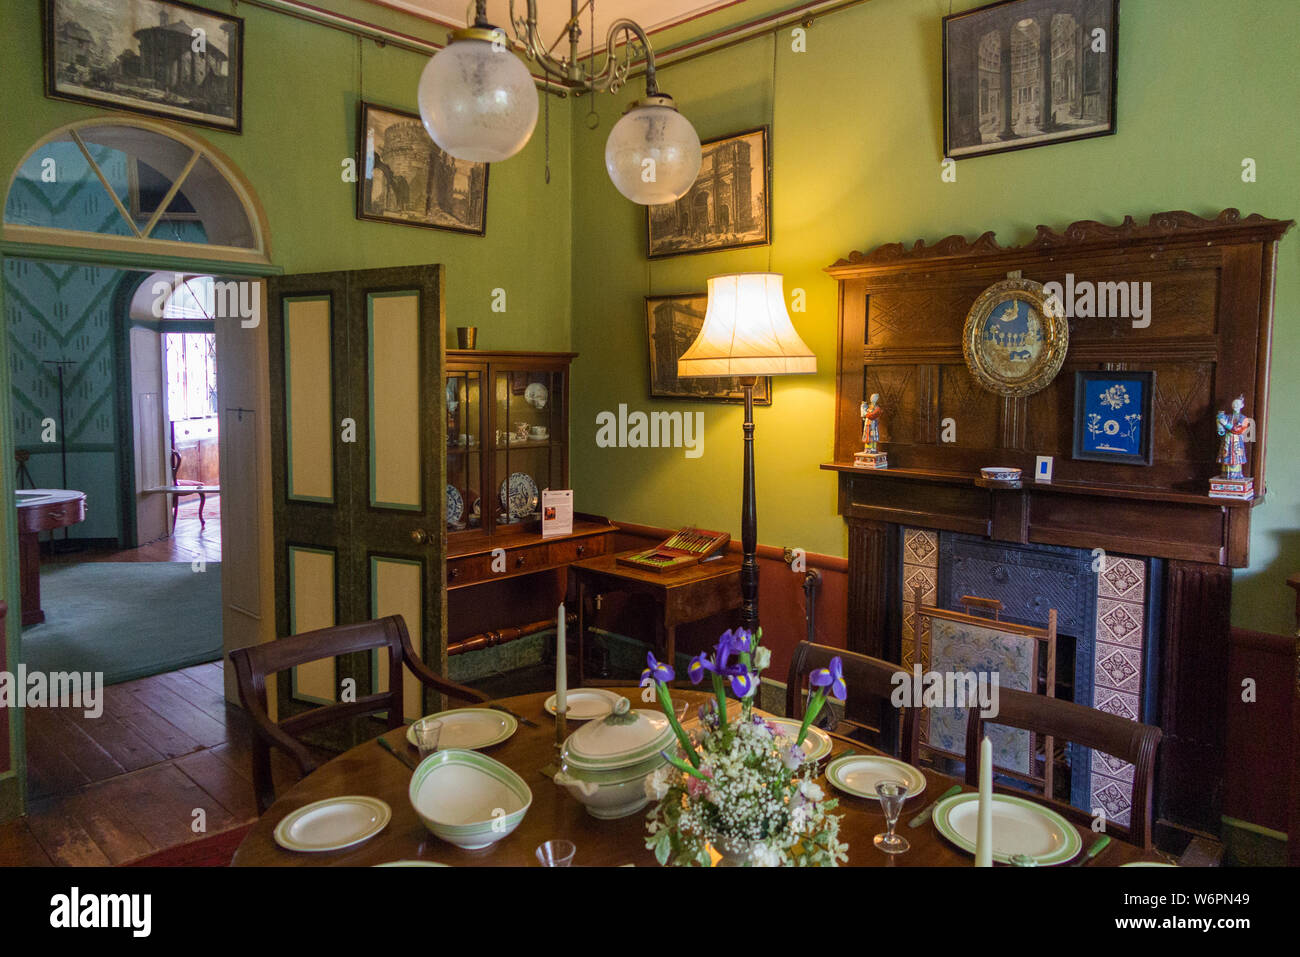 L'intérieur à l'intérieur salle à manger avec table dressée pour un repas, d'une La Ronde, qui est un 18e siècle recto verso 16 maison située près de Lympstone, Exmouth, Devon UK (110) Banque D'Images